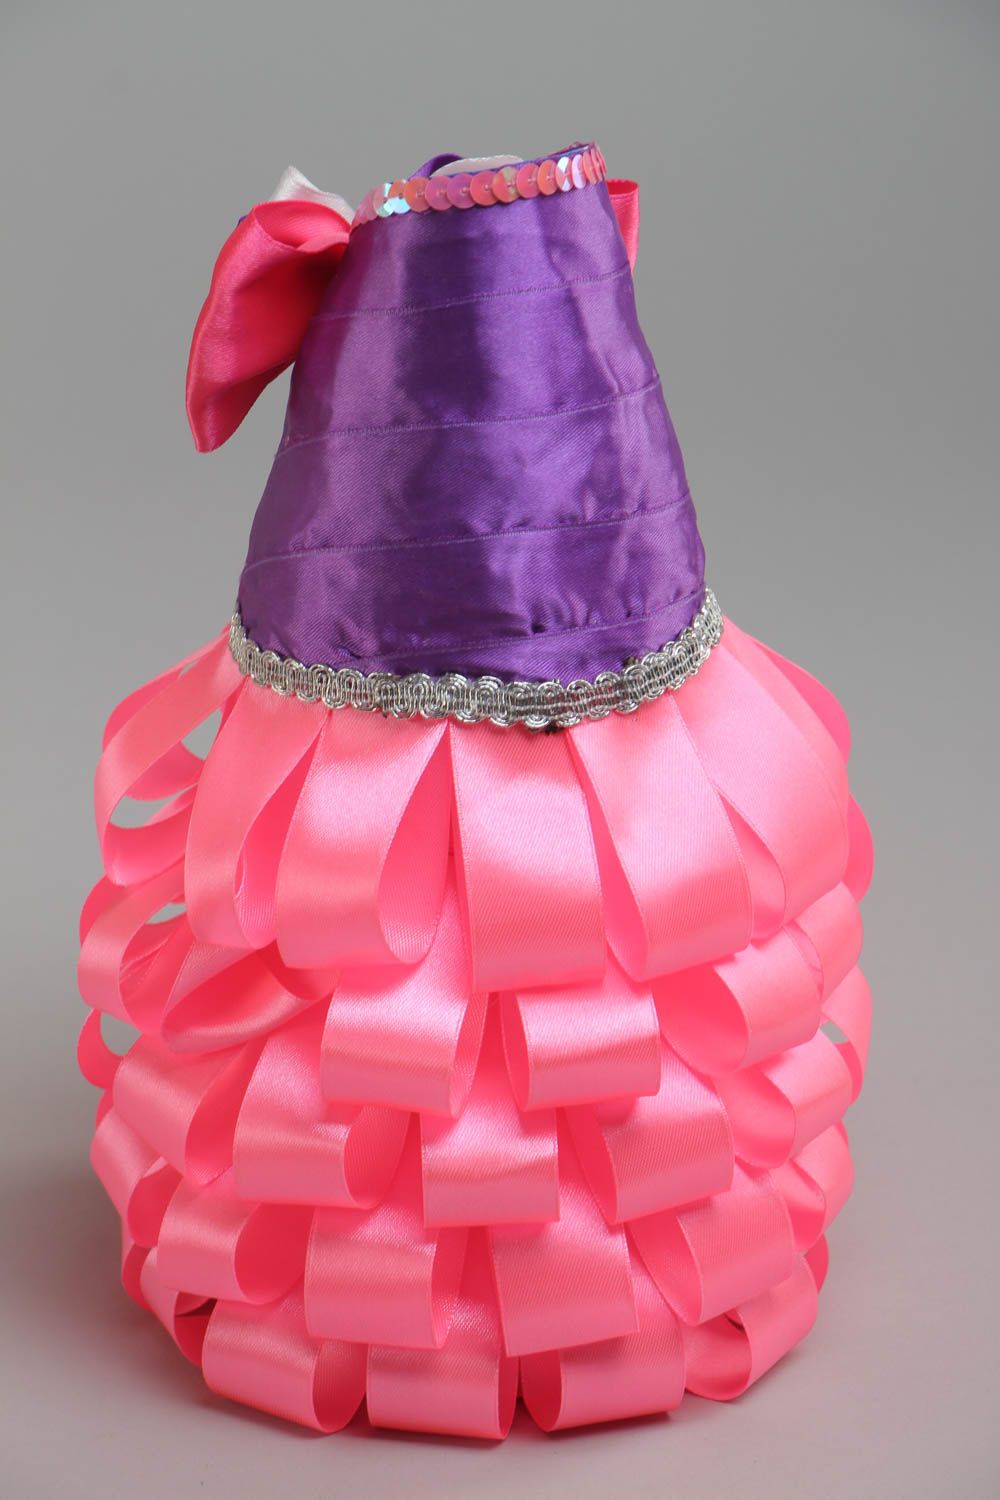 Décoration de bouteille faite main rose festive pratique accessoire original photo 4